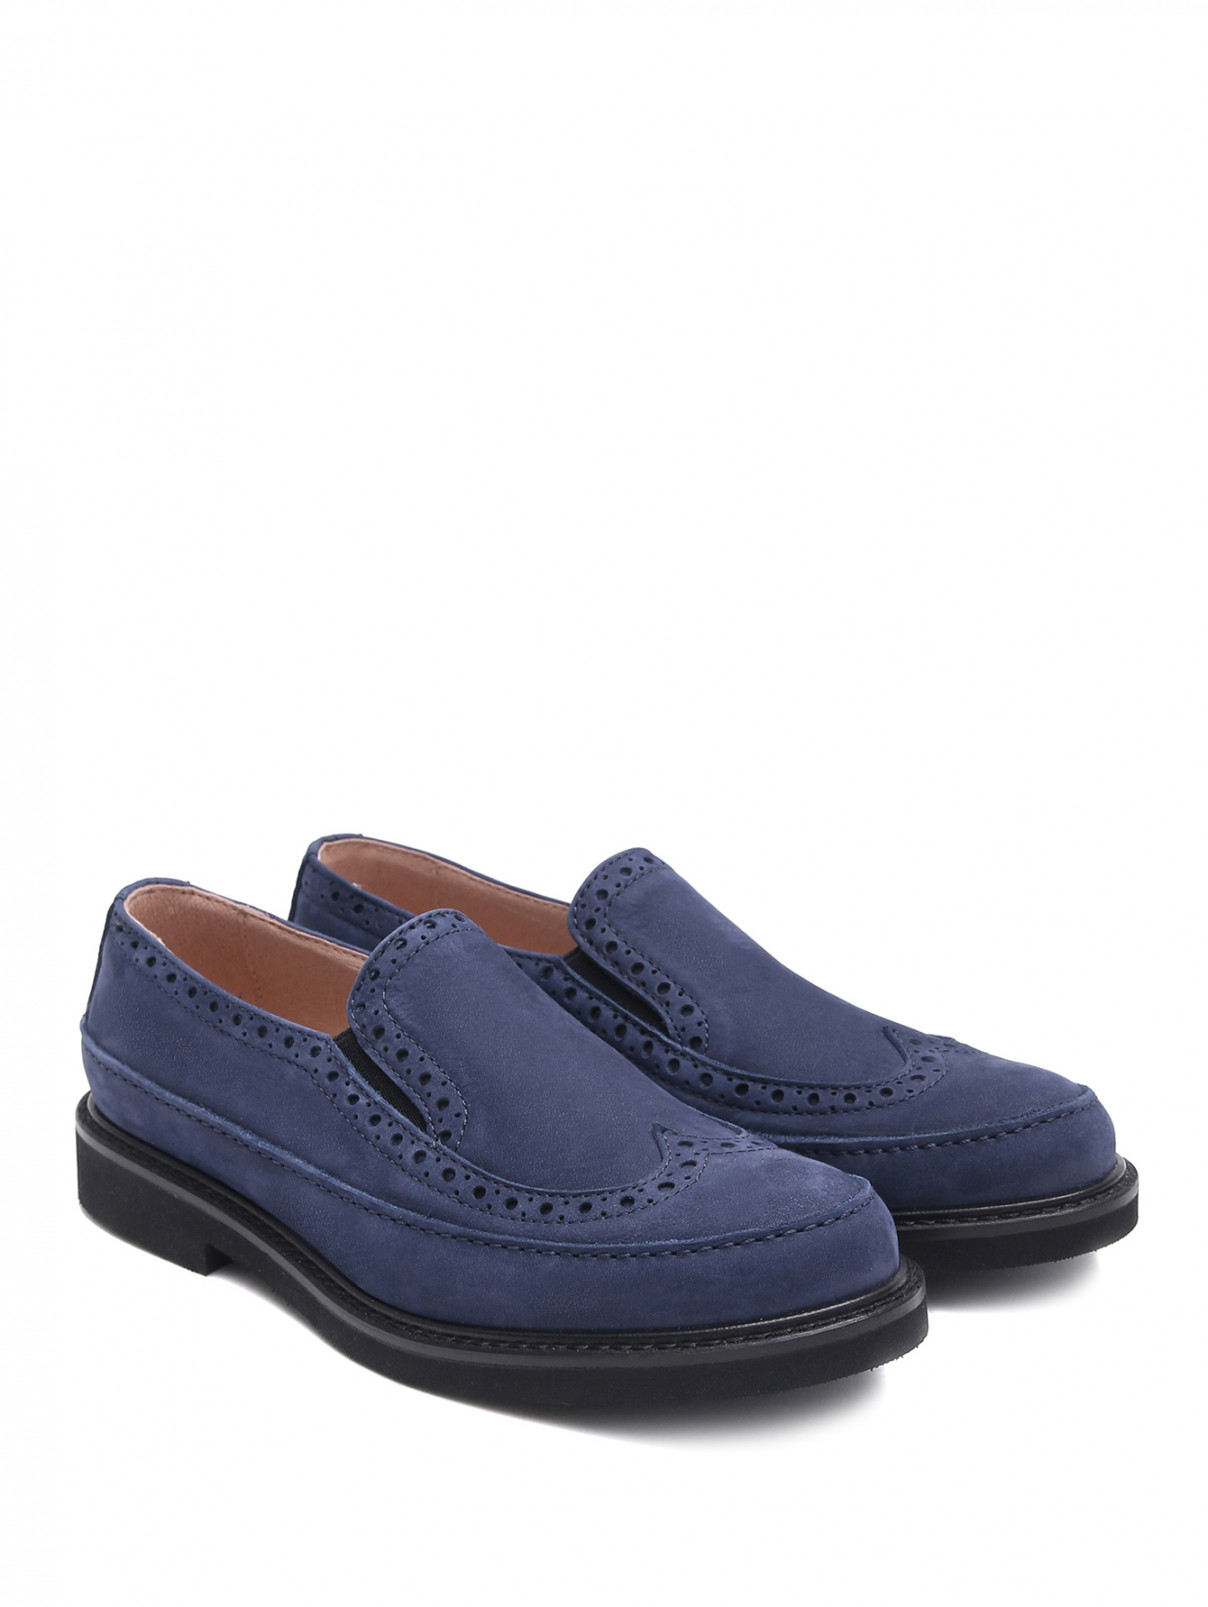 Замшевые туфли с перфорацией MONTELPARE TRADITION  –  Общий вид  – Цвет:  Синий